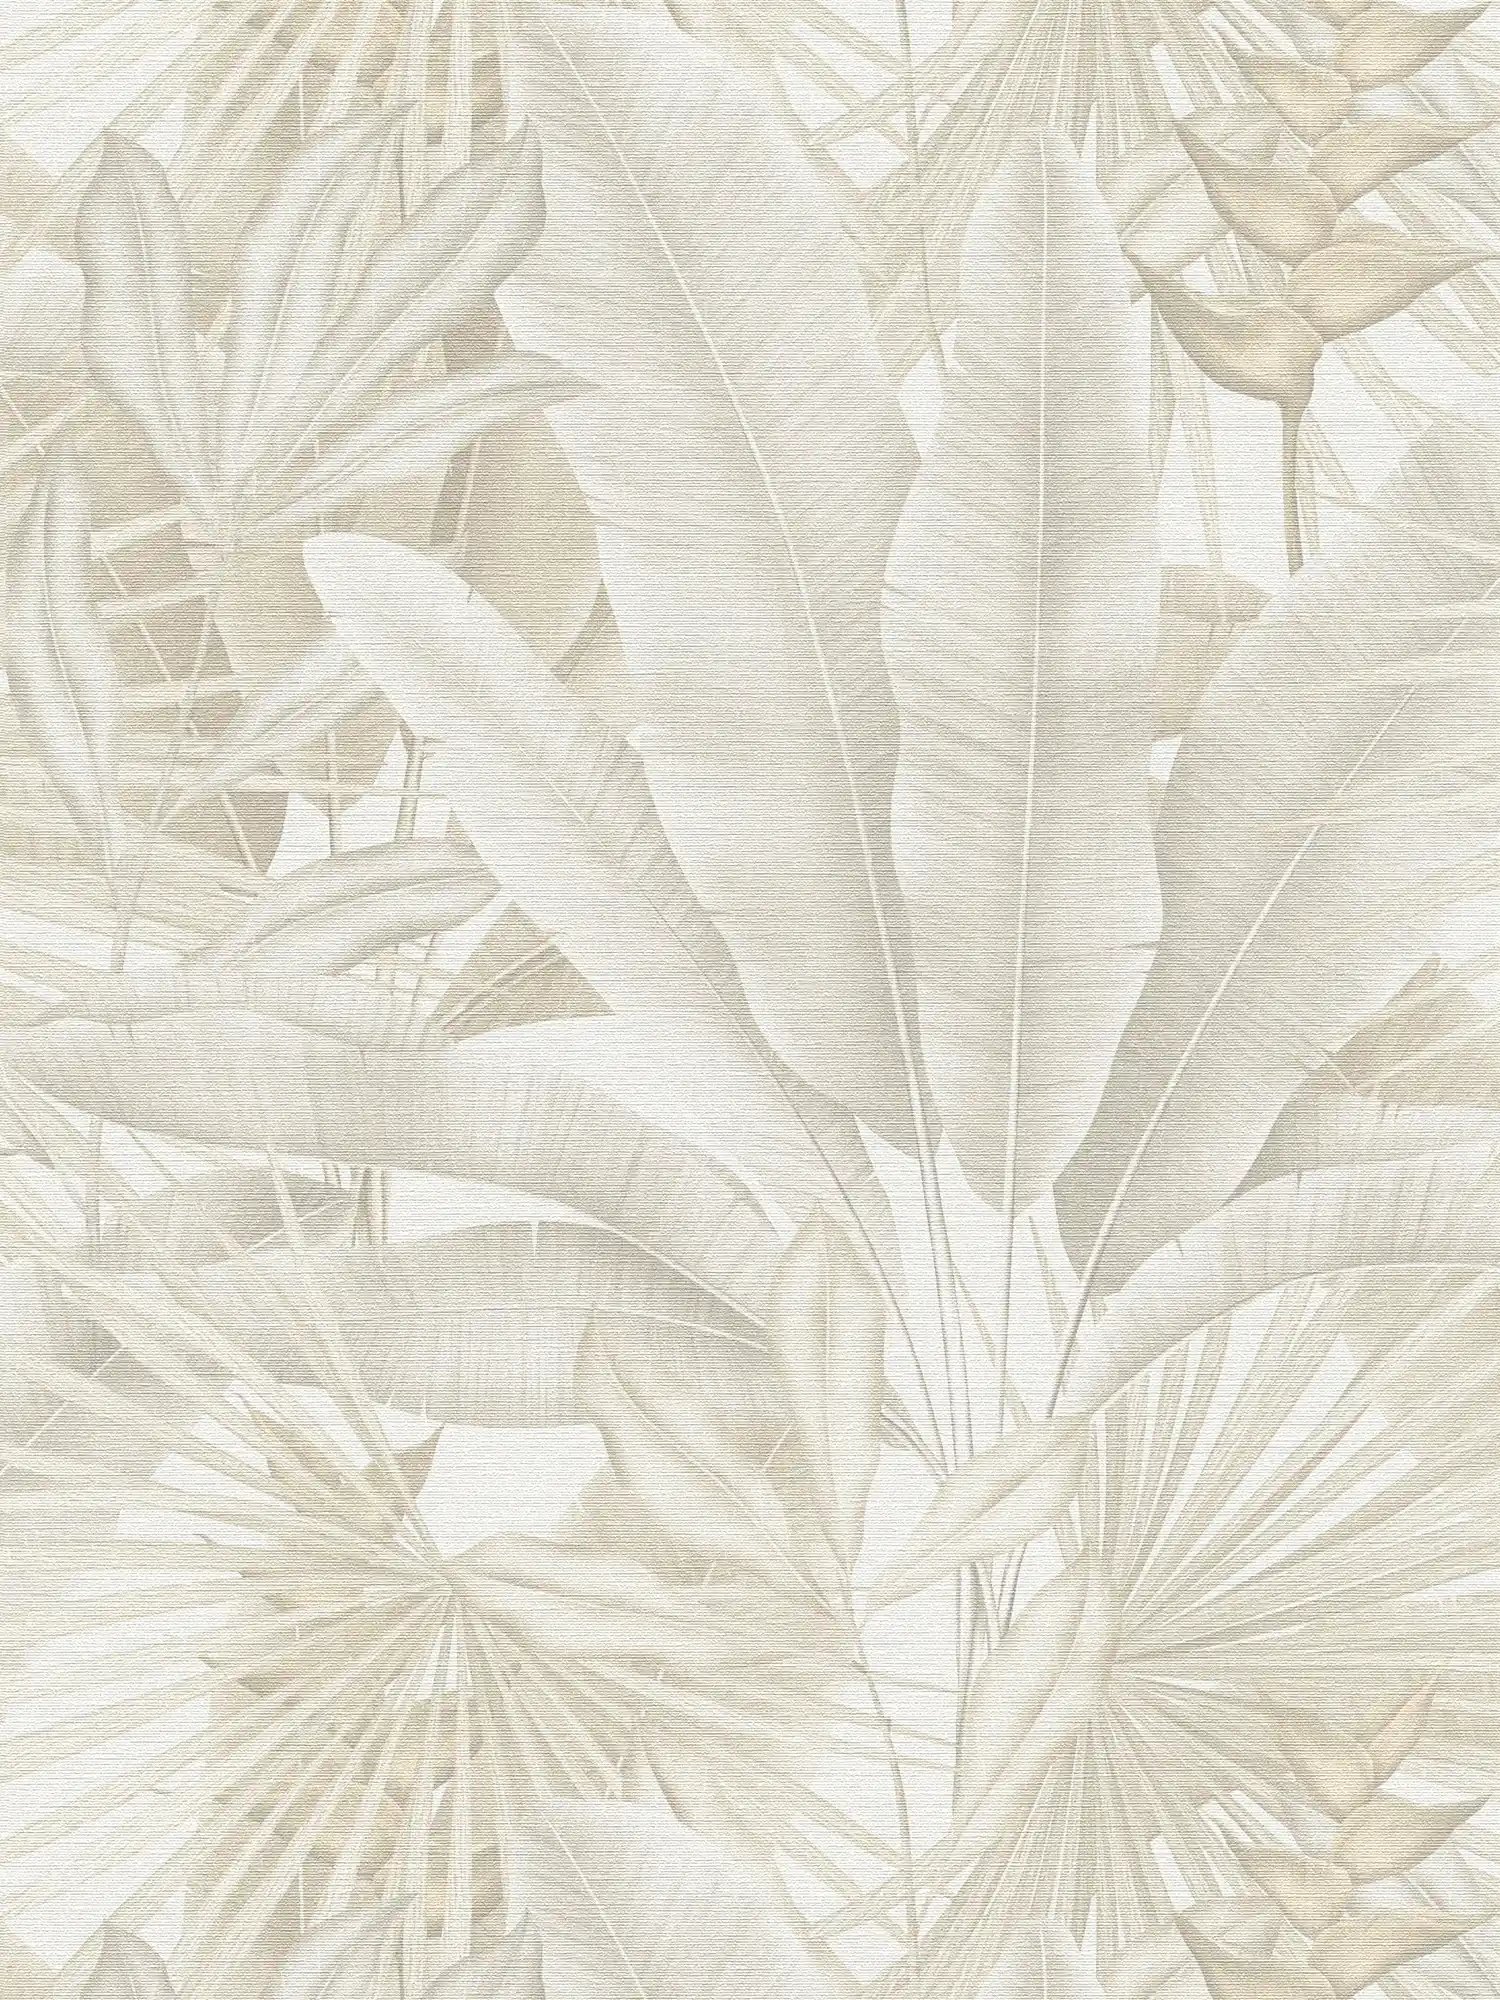 papier peint en papier jungle aux couleurs douces - beige, crème, gris
